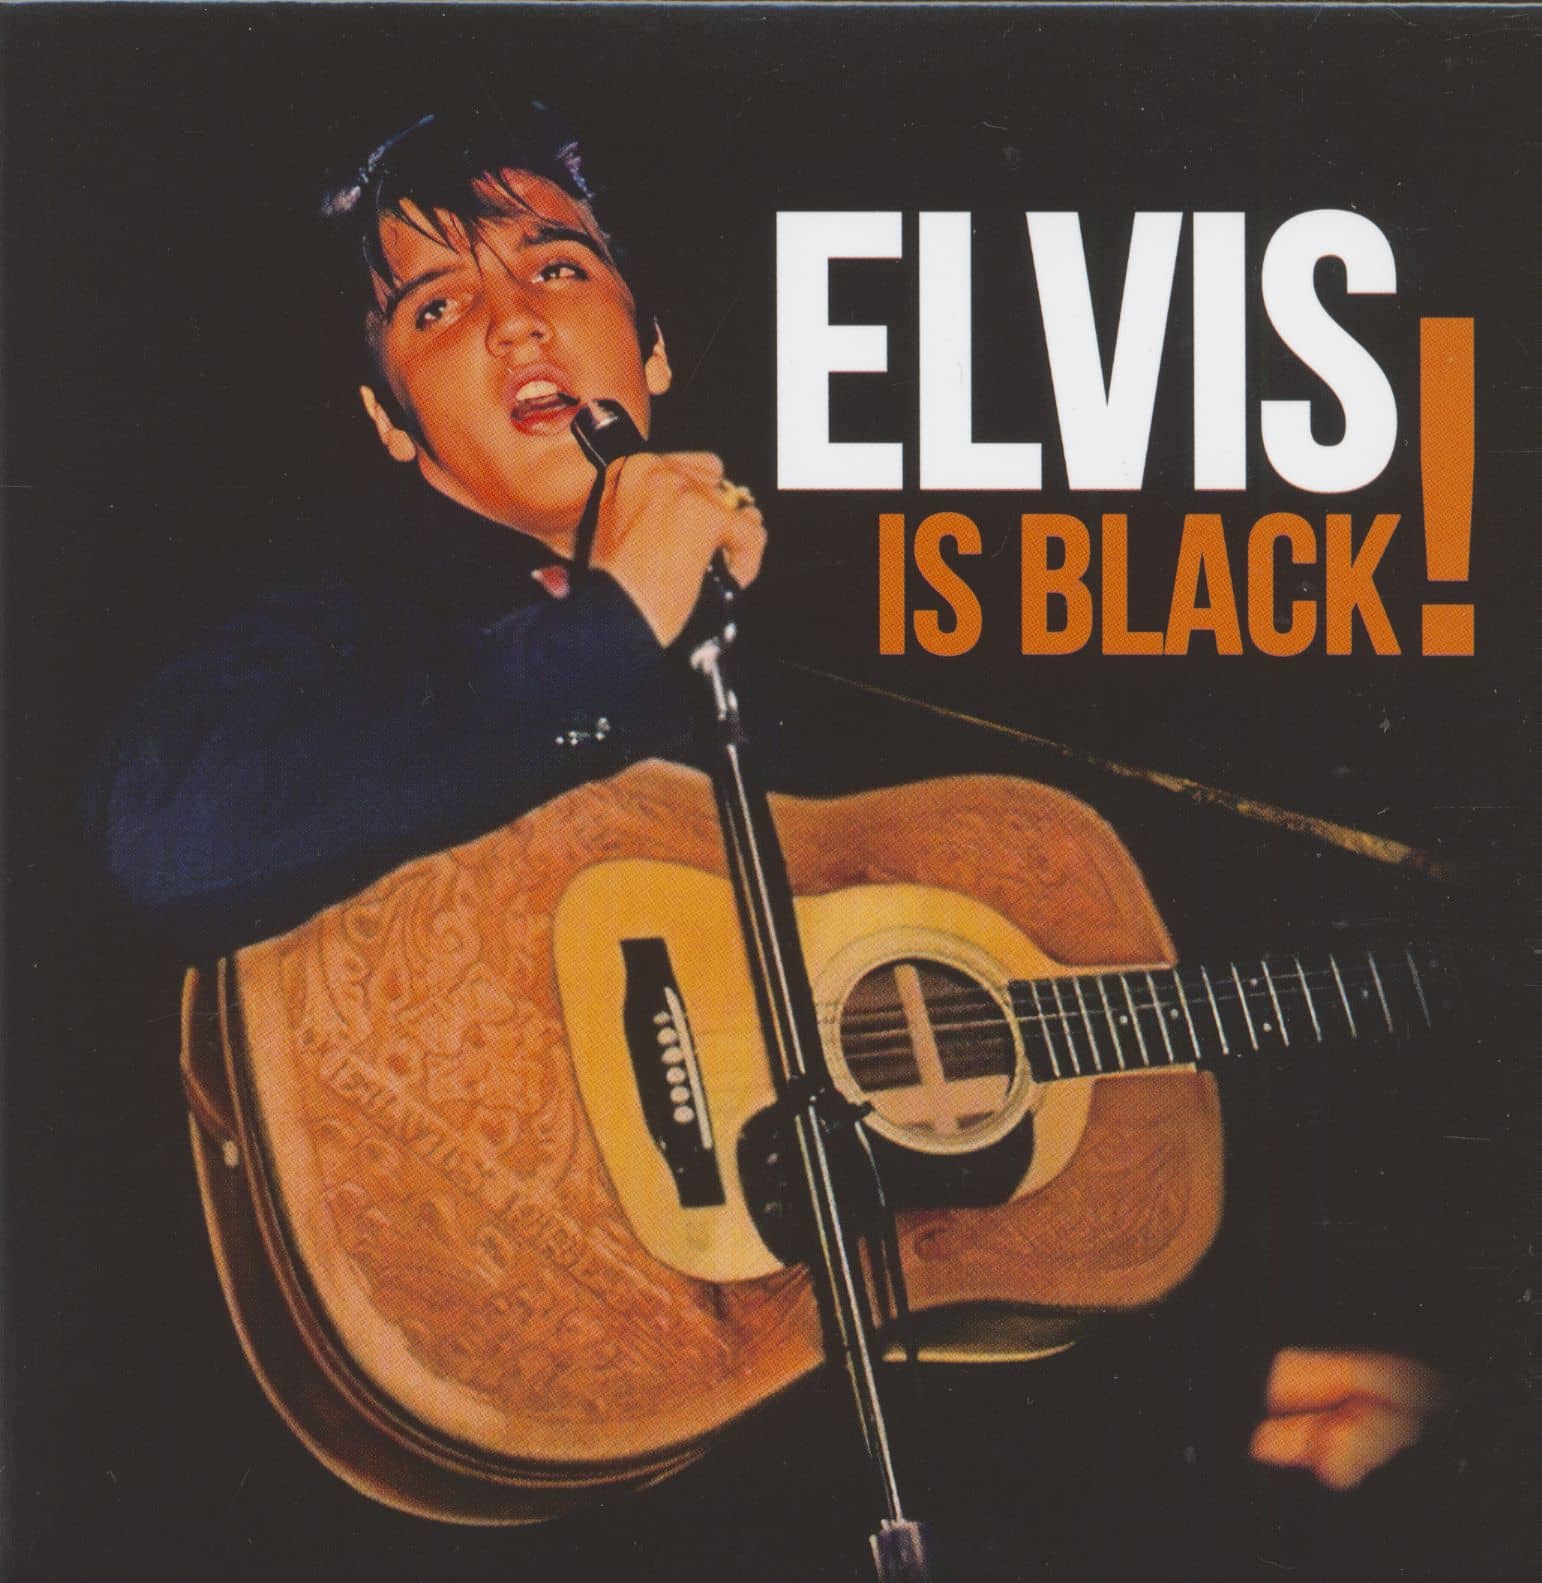 Audio Cd Elvis Presley - Elvis Is Black (2 Cd) (Rsd 2023) NUOVO SIGILLATO, EDIZIONE DEL 22/04/2023 SUBITO DISPONIBILE